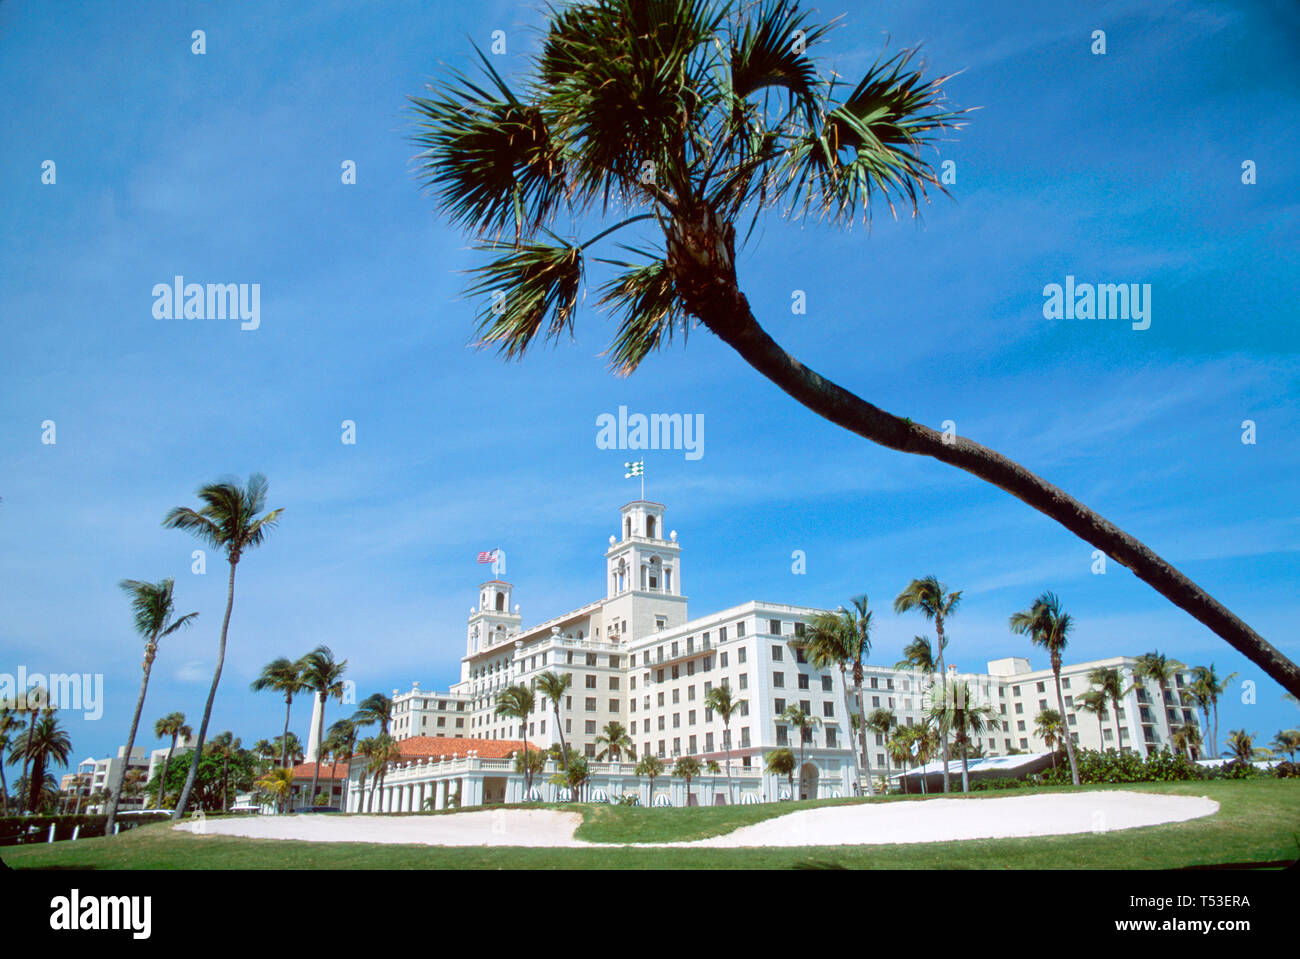 Palm Beach Florida, The Breakers, construido en 1926 estilo renacentista italiano, diseño arquitectónico, hotel de cinco estrellas, vistas del campo de golf, deporte, atleta, recreación Foto de stock